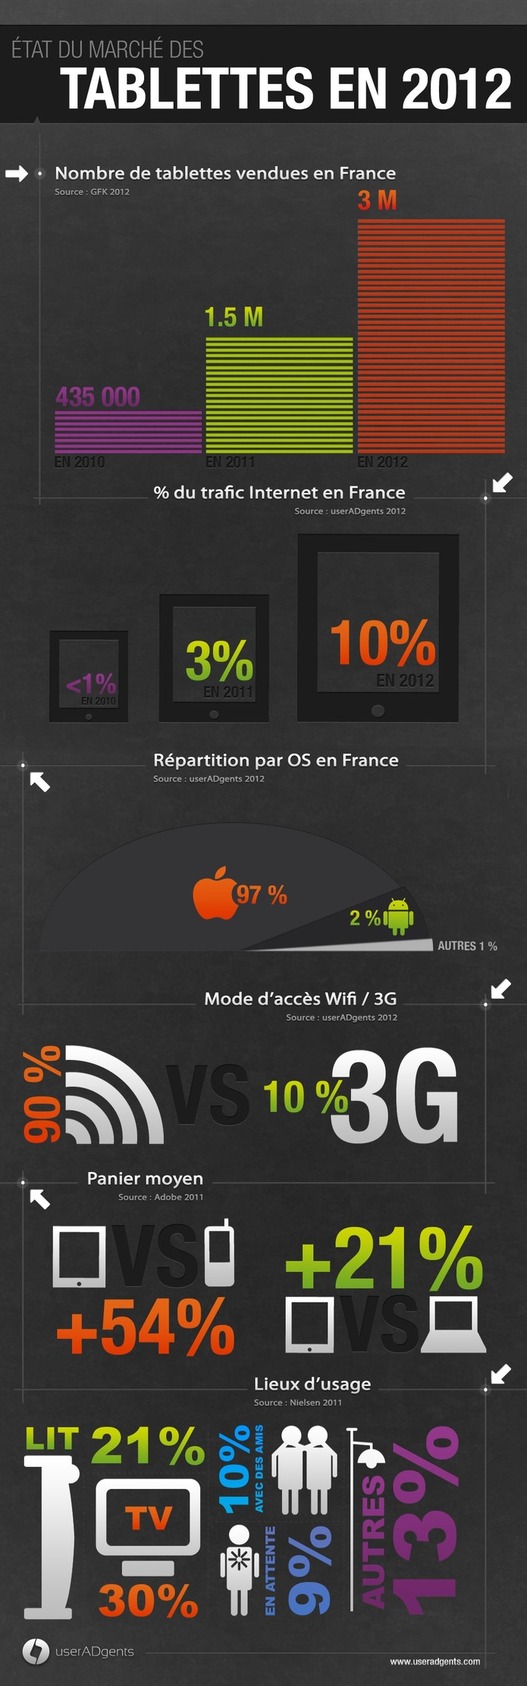 Le marché des tablettes en France en 1 image